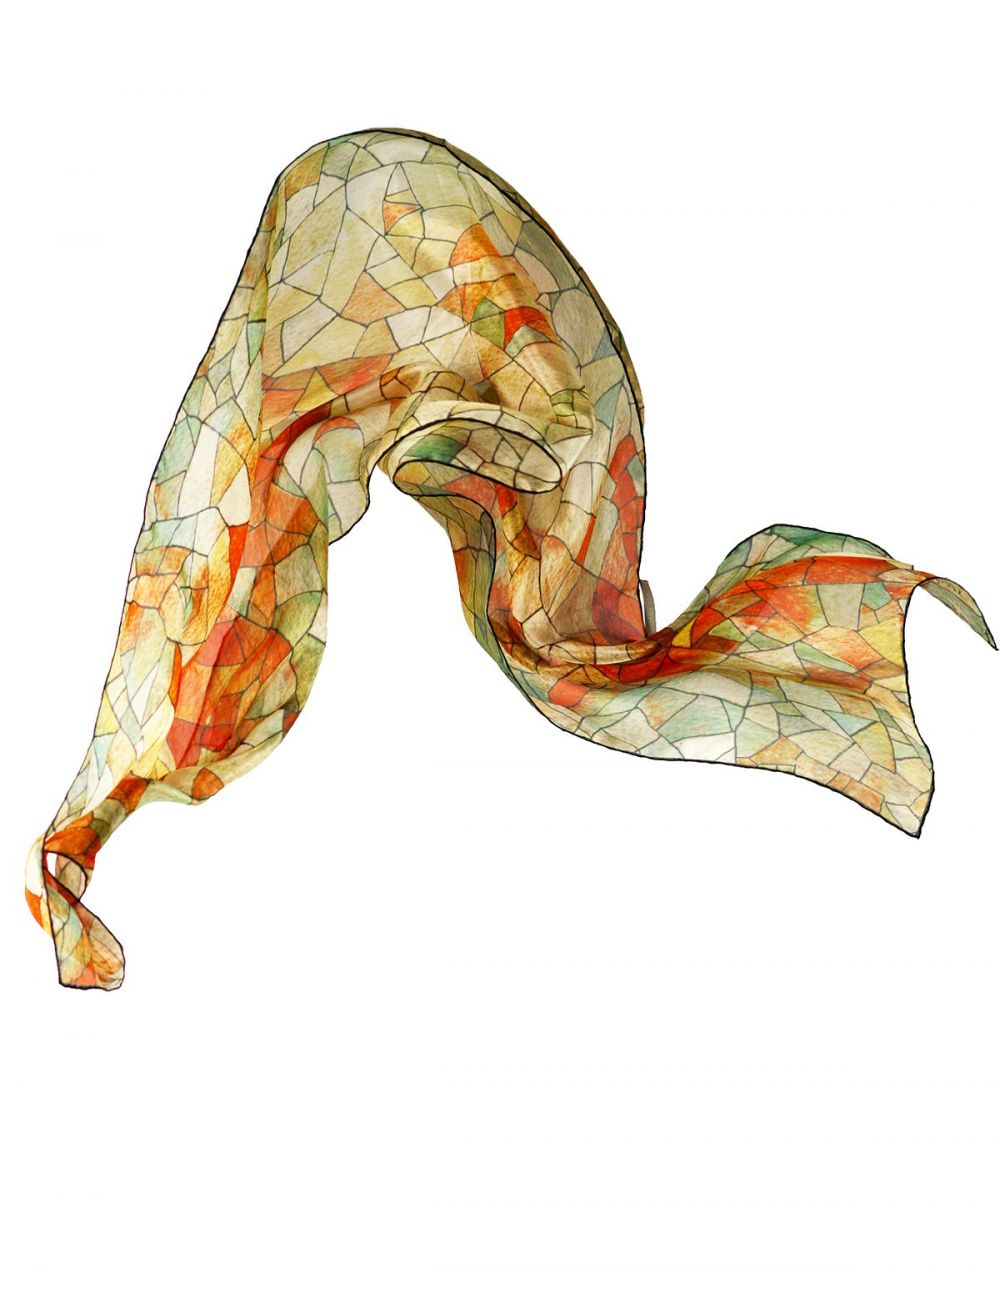 "Cel i Terra", fulard de seda natural i disseny geomètric inspirat en l'art d'en Gaudí. Colors torrats.